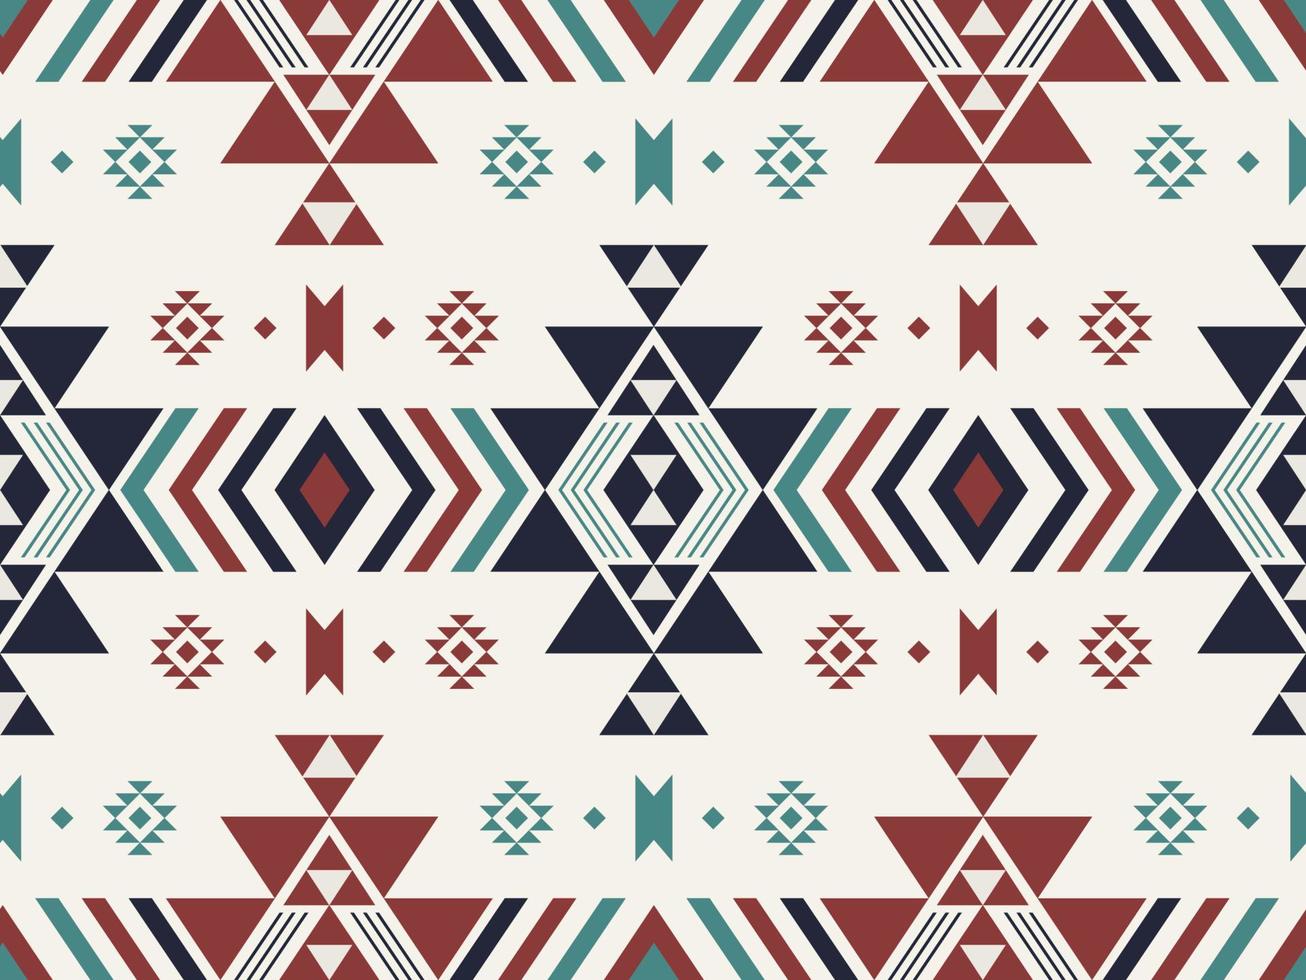 etnisch meetkundig patroon. zuidwesten aztec meetkundig vorm kleurrijk naadloos patroon achtergrond. gebruik voor kleding stof, textiel, etnisch interieur decoratie elementen, bekleding, inpakken. vector